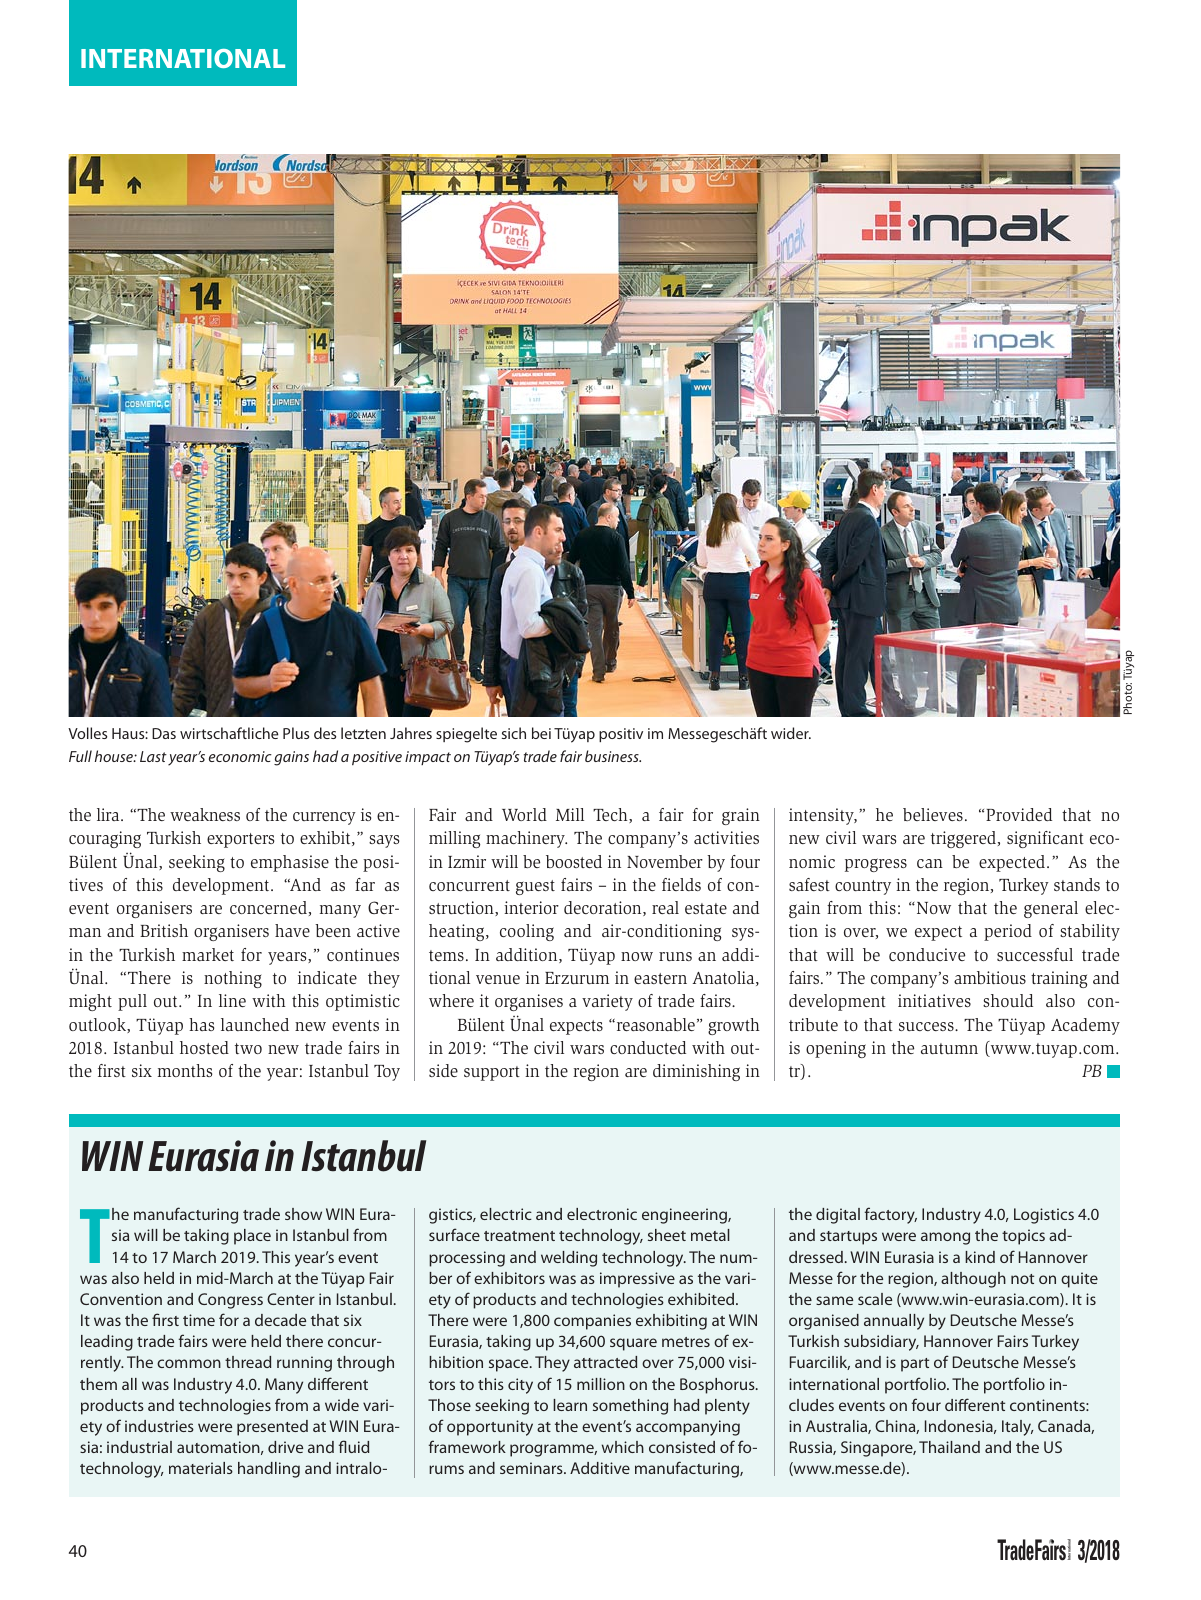 Vorschau TFI Trade-Fairs-International 03/2018 Seite 40